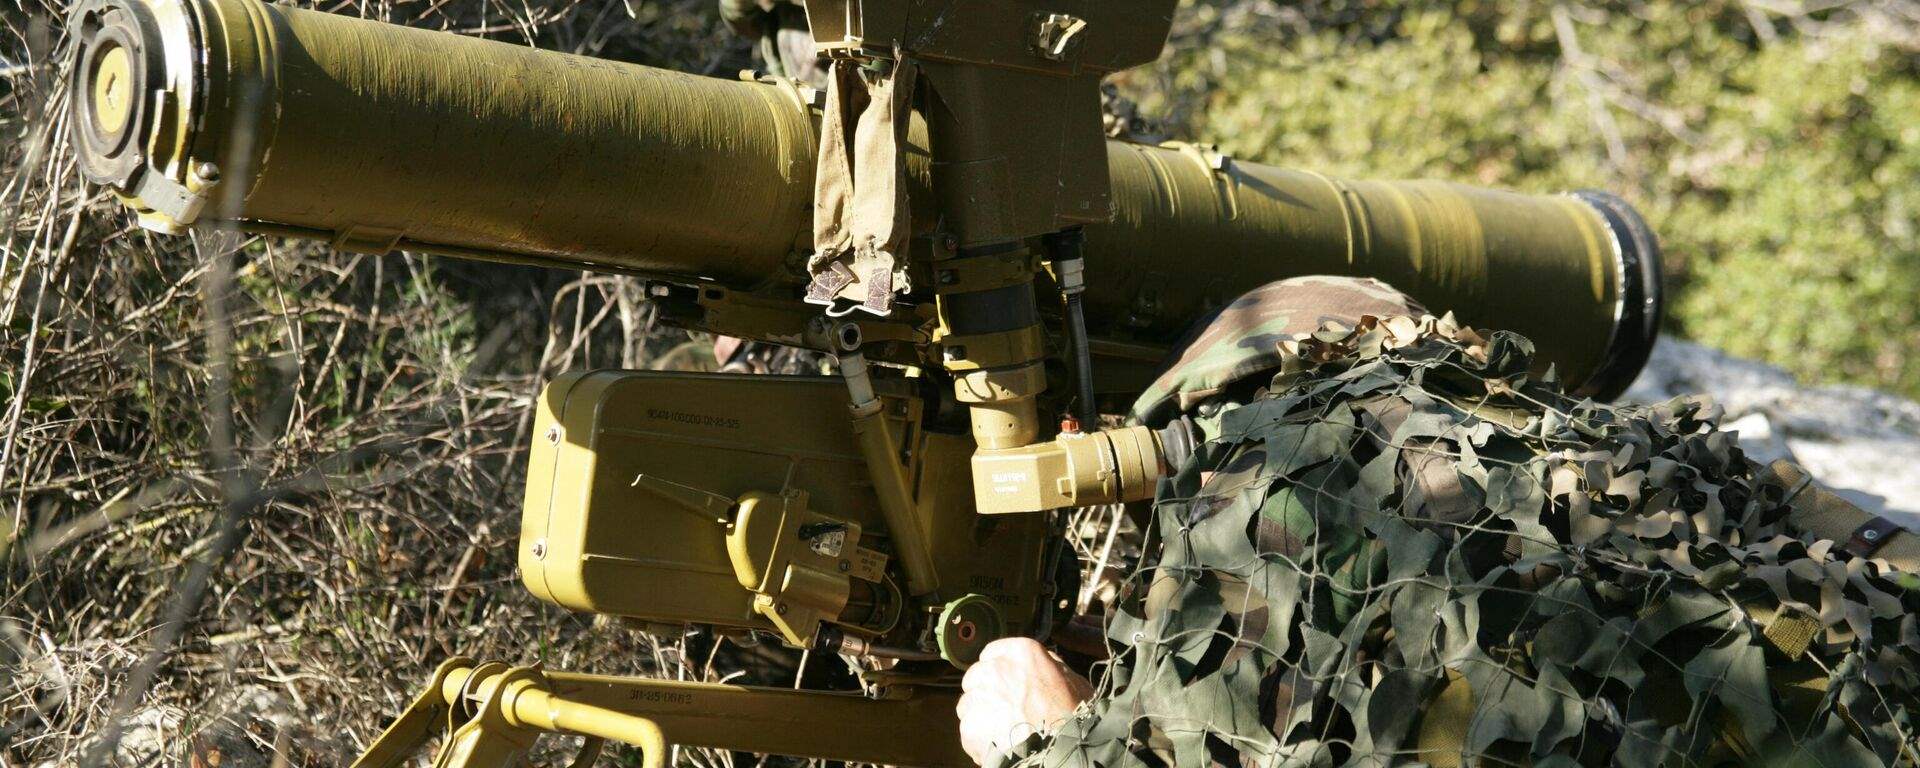 حزب الله: إستهدفنا تجمعاً لأفراد وآليات ‏العدو قرب موقع المطلة بالأسلحة المناسبة وأوقعنا فيه إصابات مباشرة